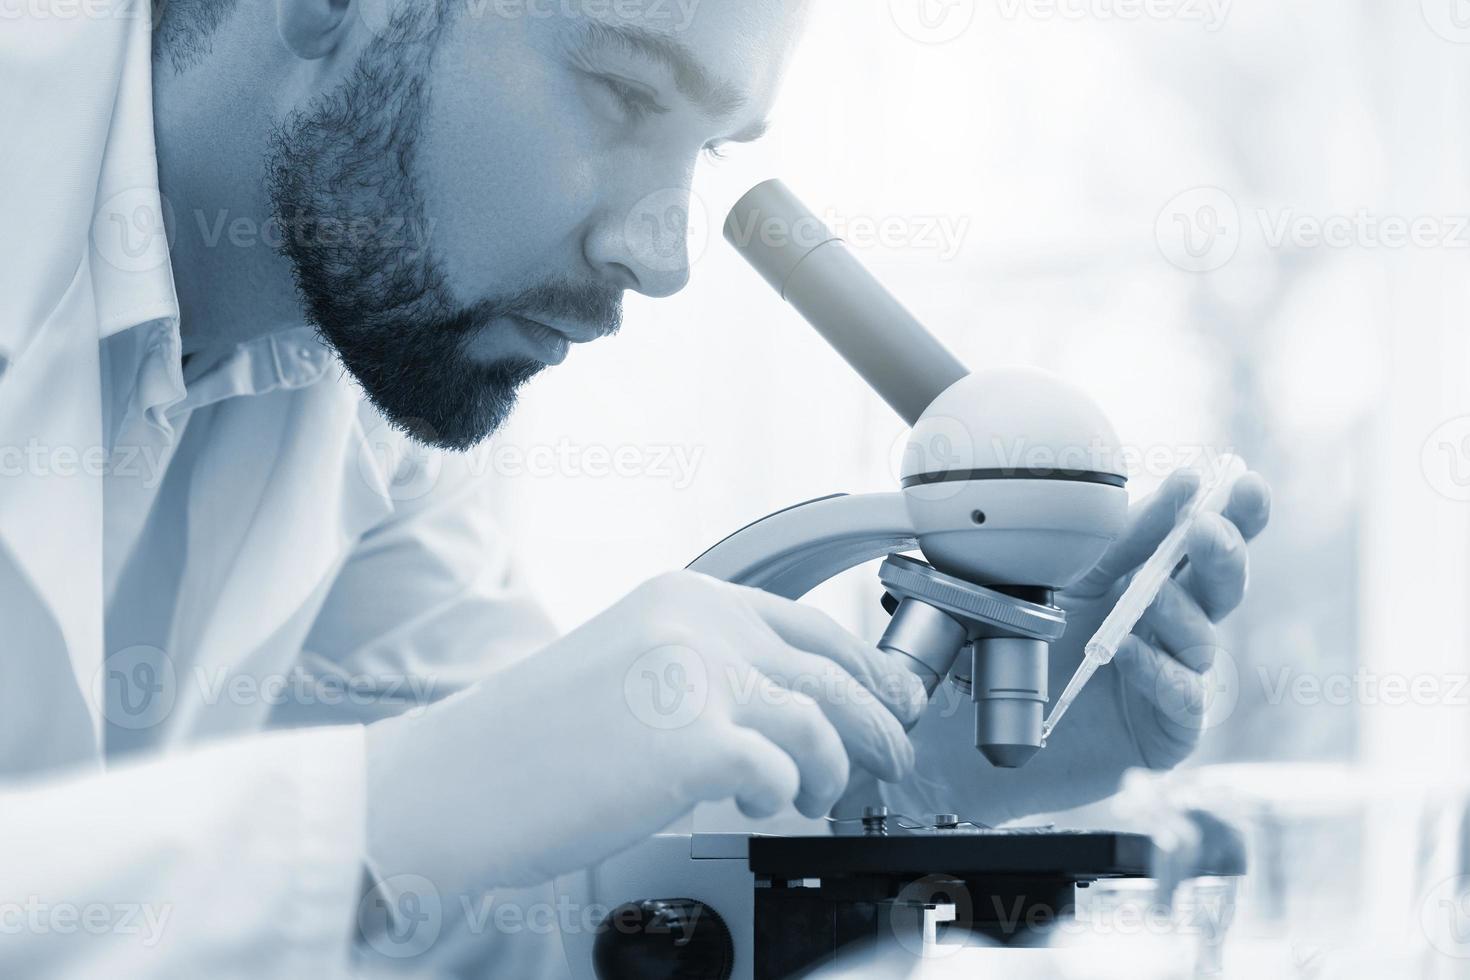 un scientifique utilise un microscope dans un laboratoire pendant des travaux de recherche scientifique photo